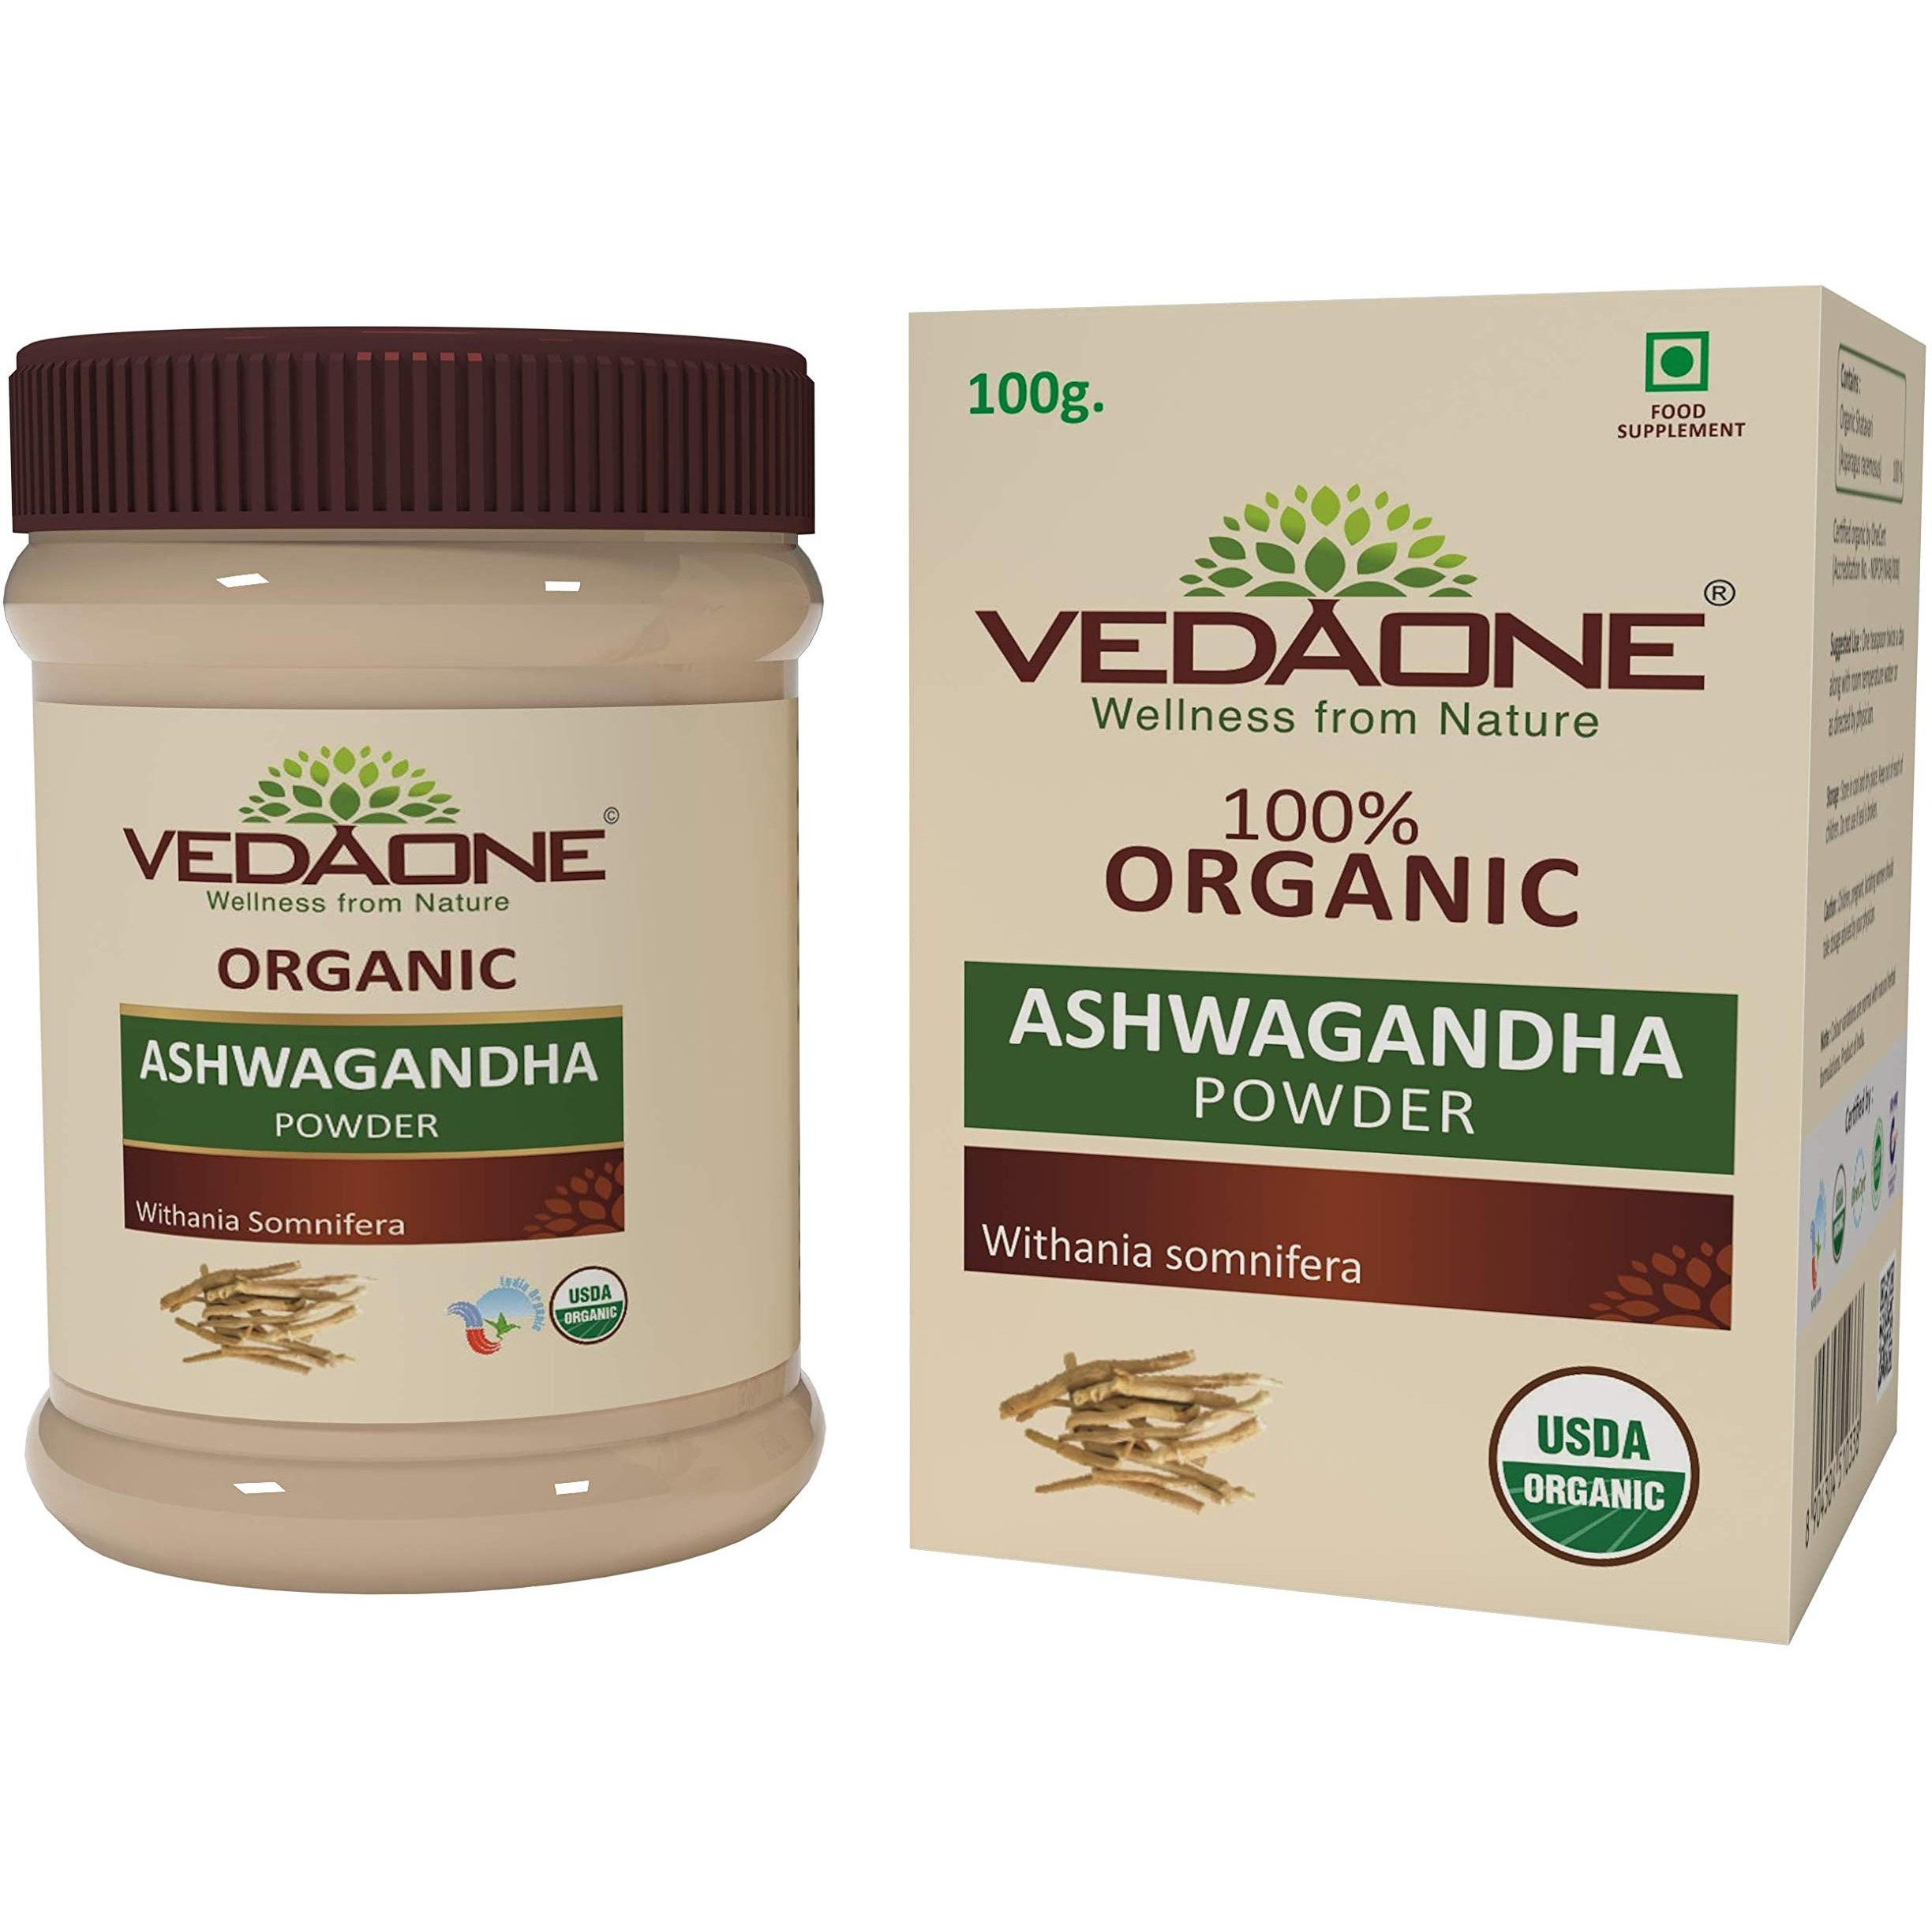 Vedaone USDA Organic Ashwagandha 100g Powder